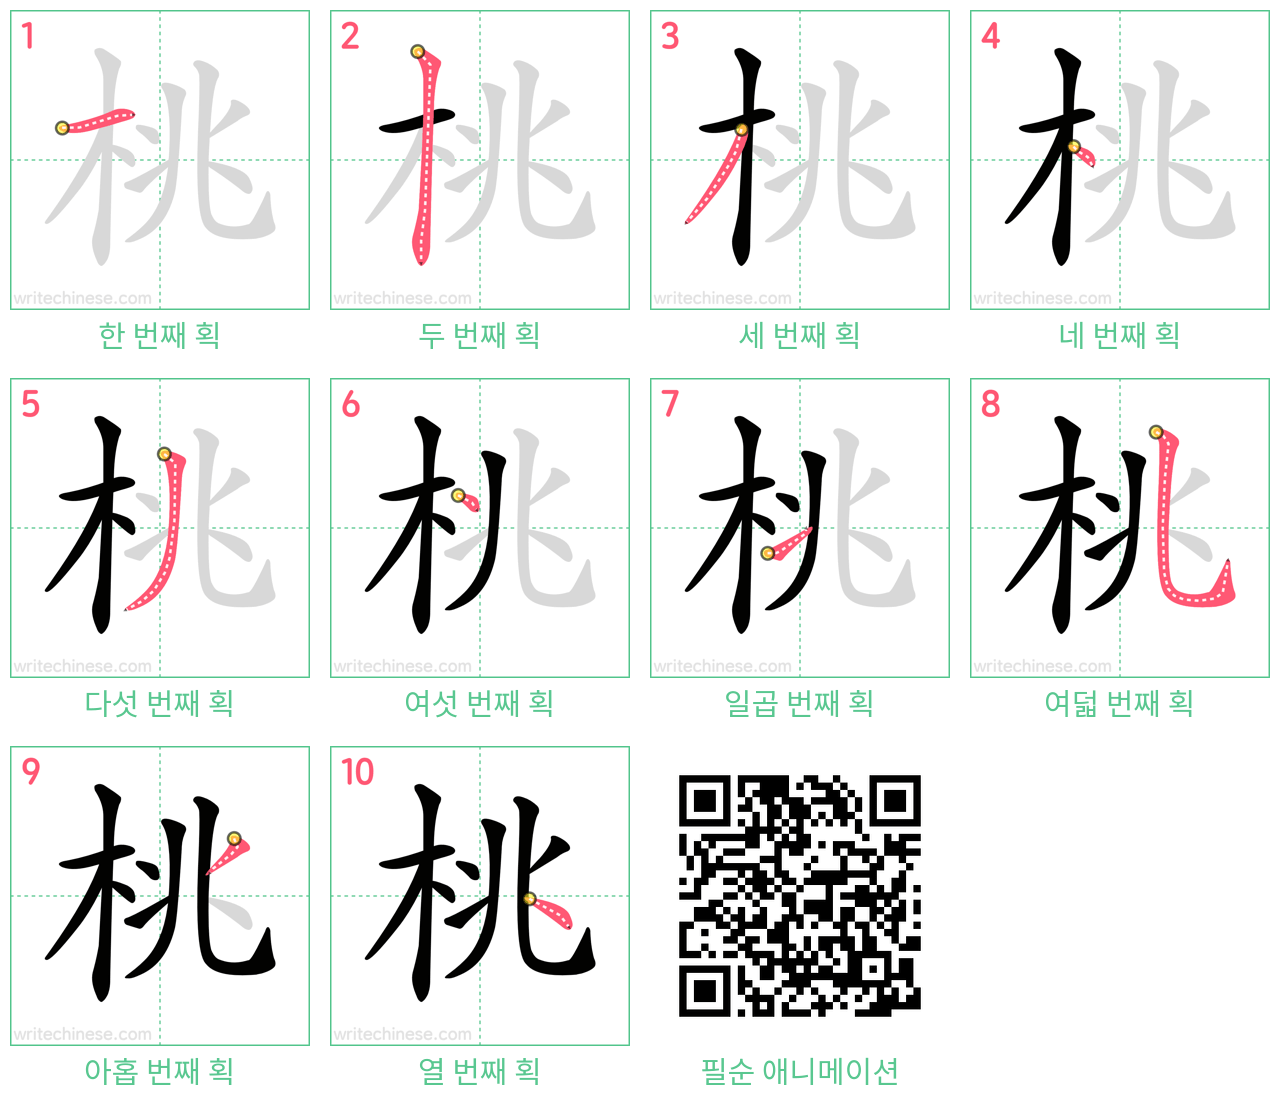 桃 step-by-step stroke order diagrams